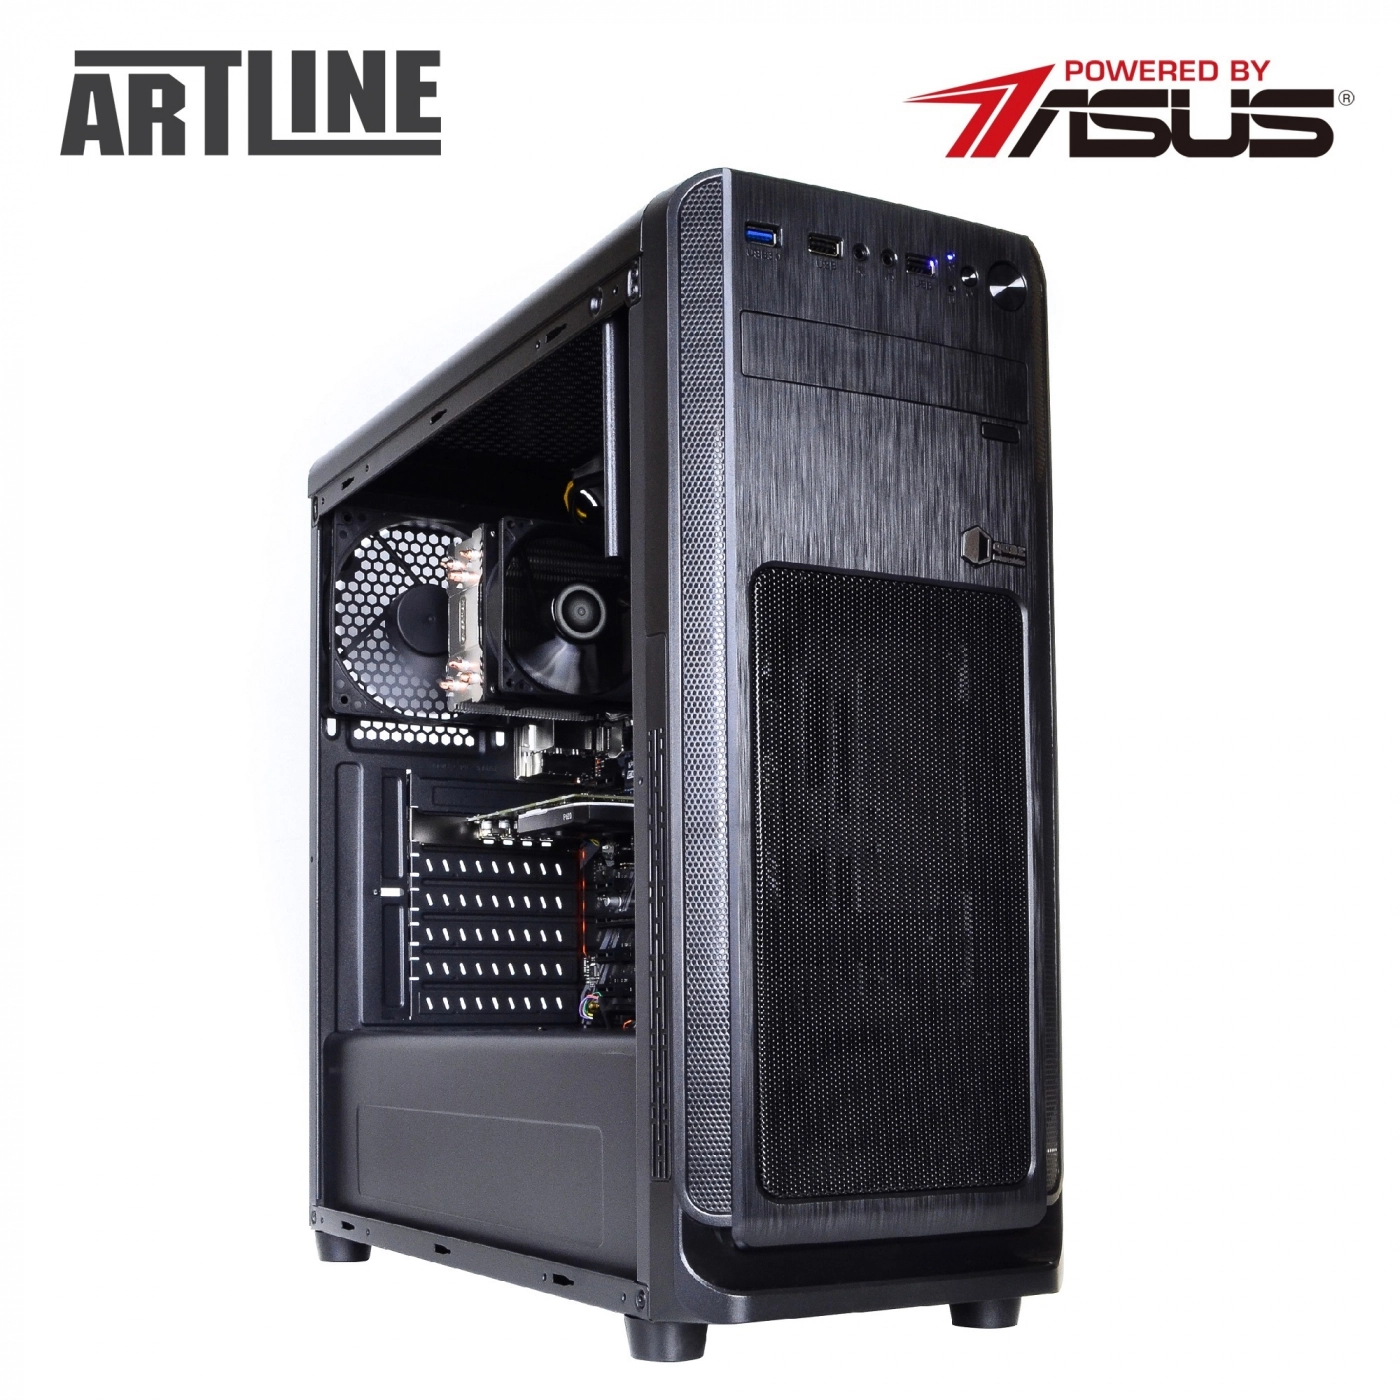 Купить Сервер ARTLINE Business T25v31 - фото 8